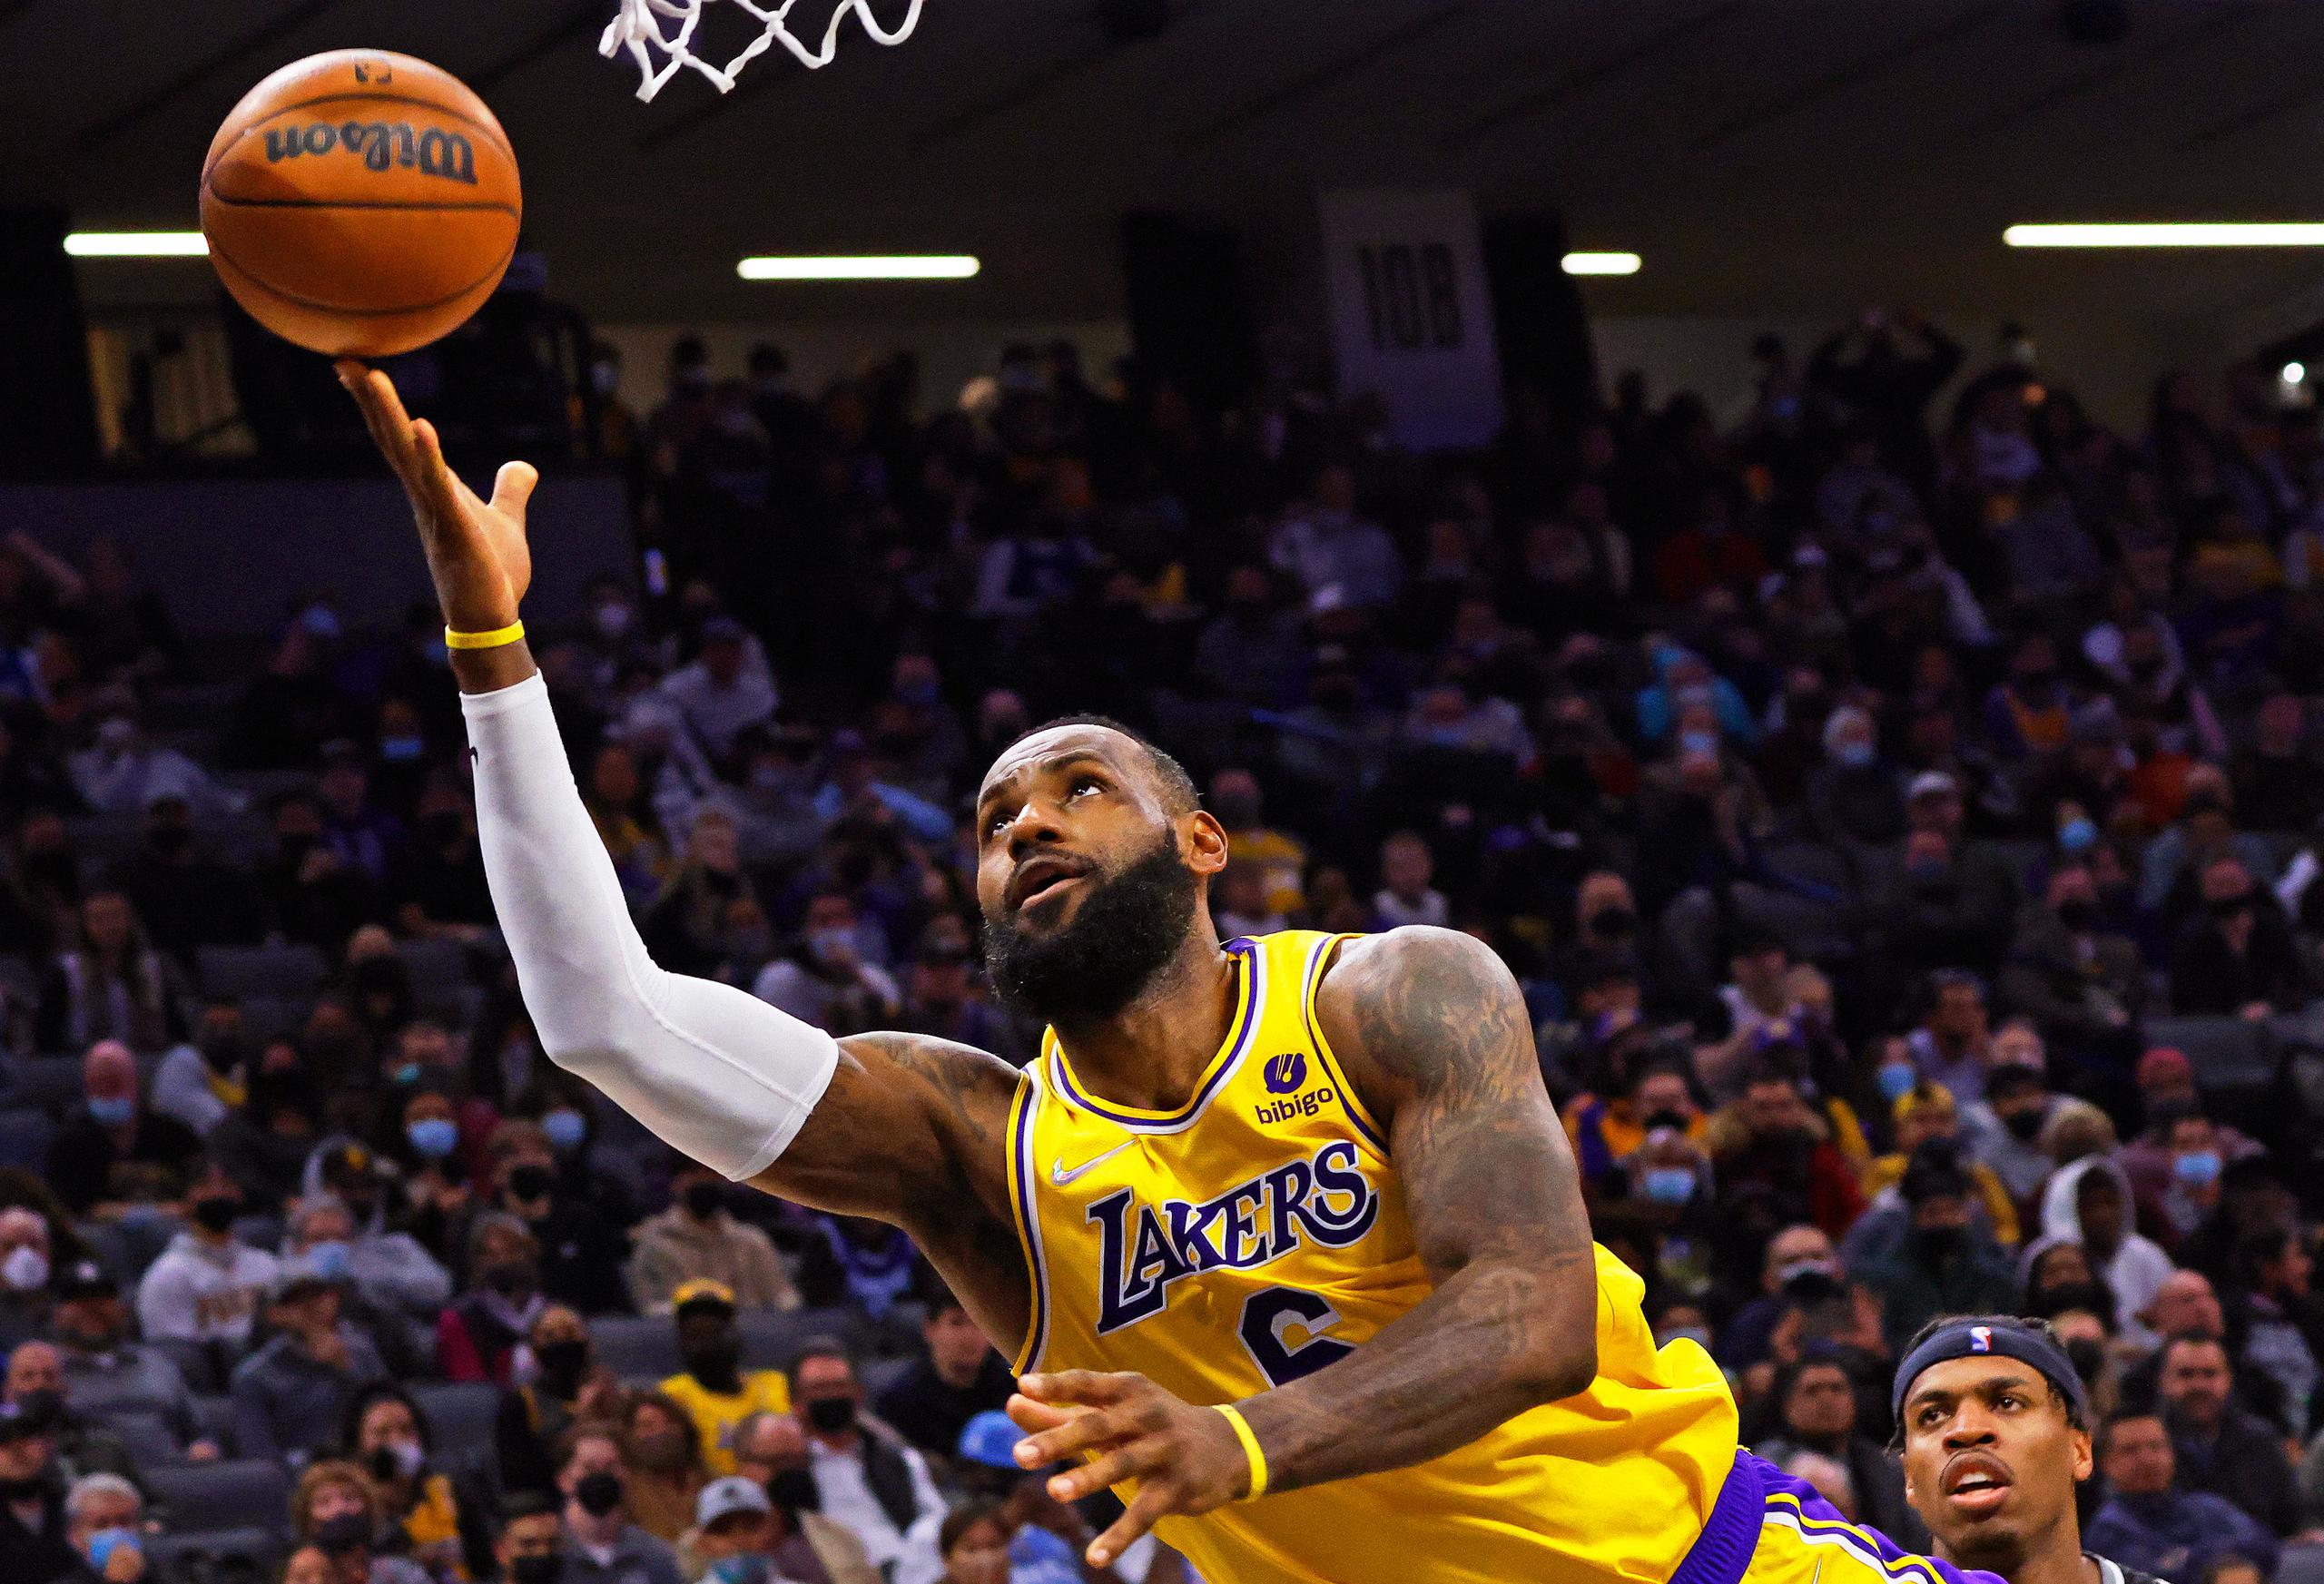 LeBron James y los Lakers perdían por 21 puntos en la primera mitad y luego vieron desvanecer una ventaja de nueve puntos en el periodo final. Hizo falta un triple doble de LeBron James en su retorno a juego luego de cinco partidos fuera debido a lesión para poder reponerse.